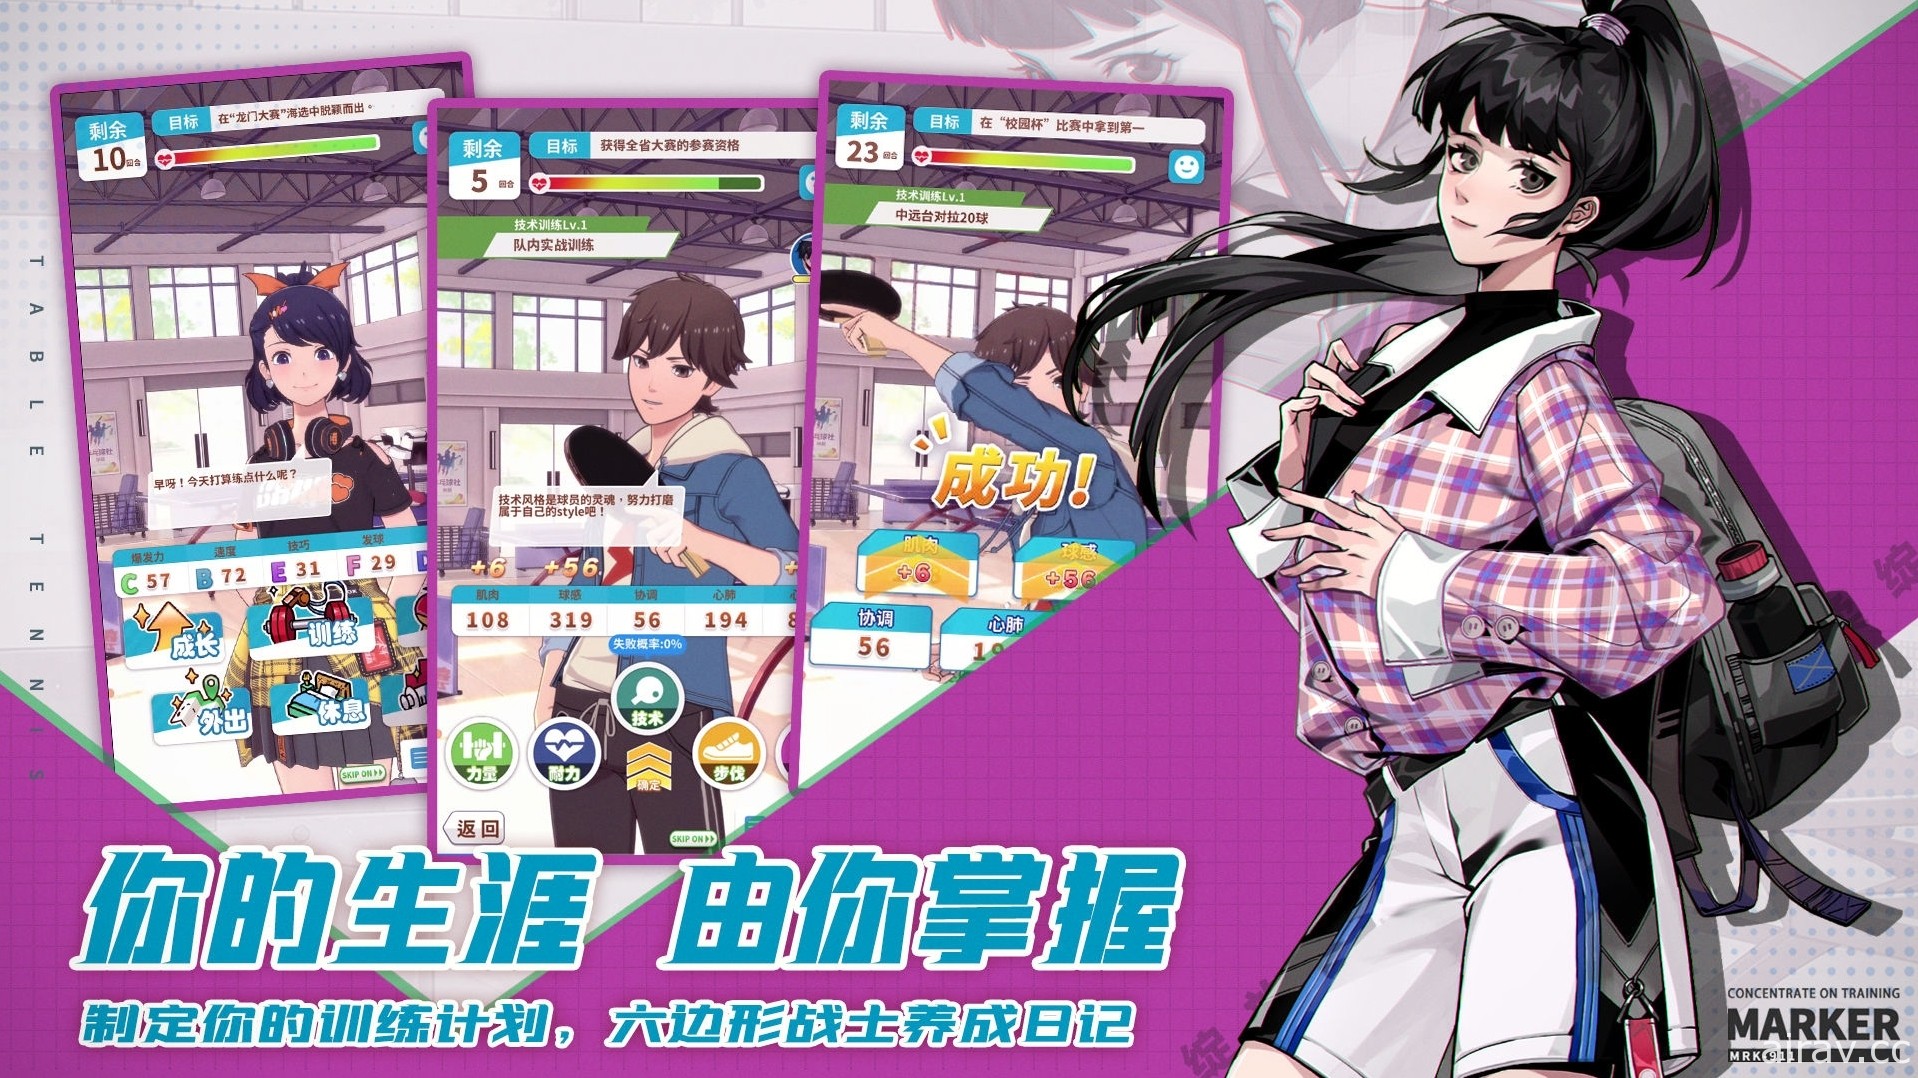 中國團隊打造模擬養成遊戲《乒乓！》涉抄襲《賽馬娘 Pretty Derby》UI 釋出道歉聲明